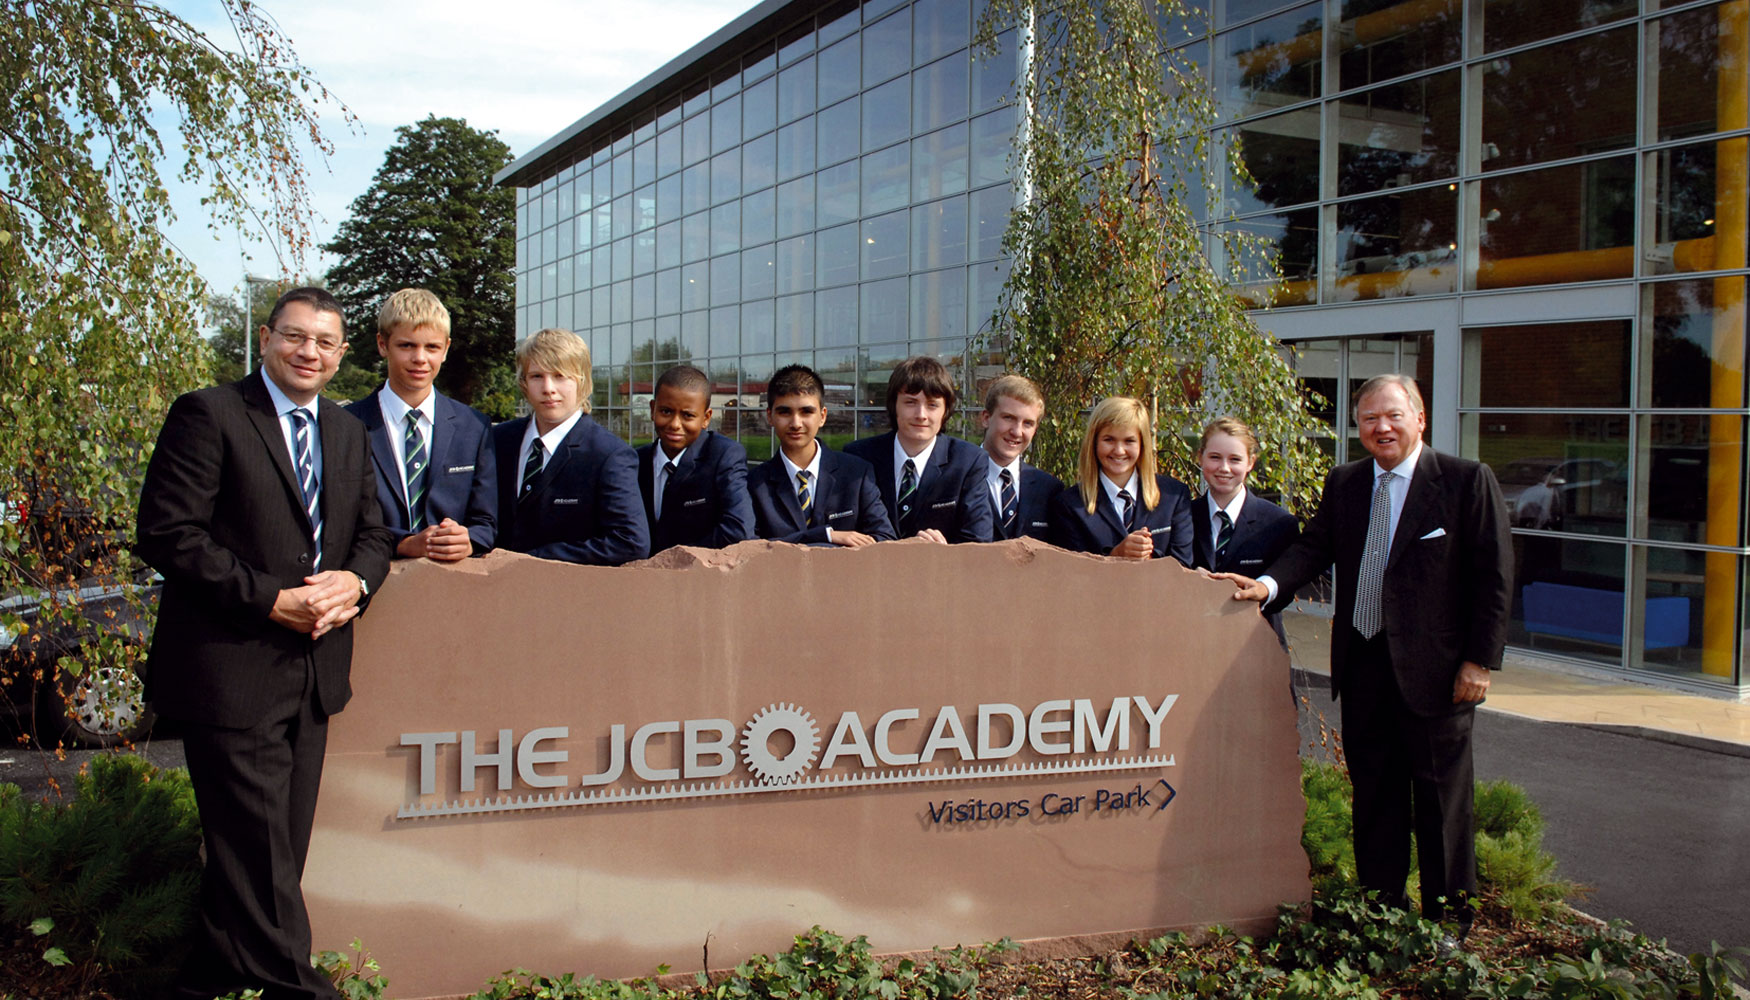 2010. Inauguracin de la JCB Academy en Rocester, Staffordshire